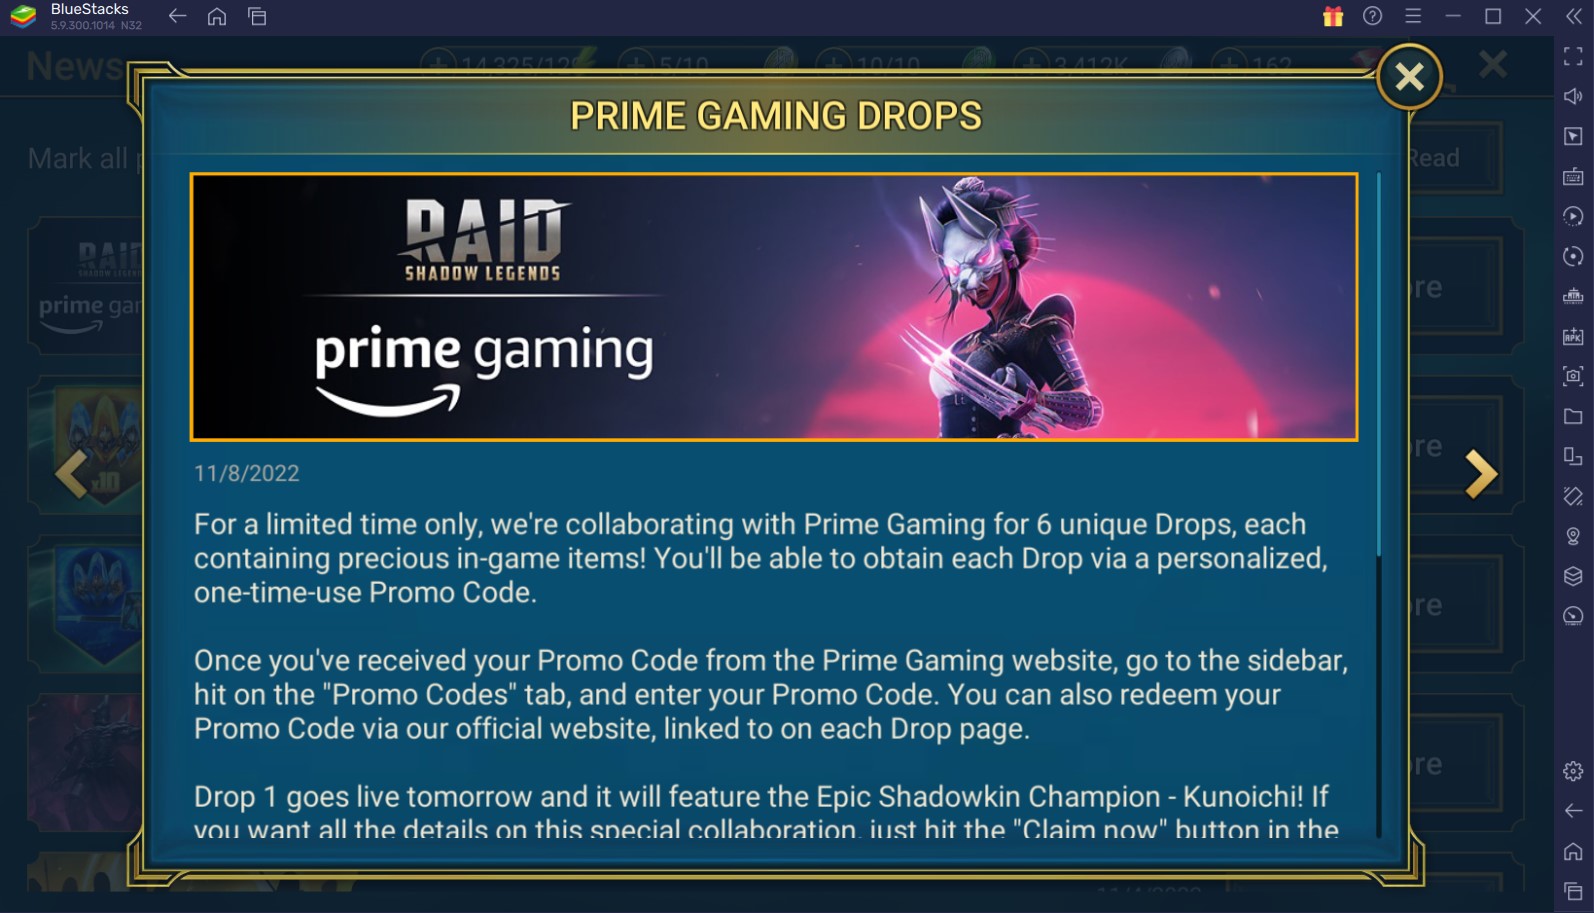 Prime Gaming Drops